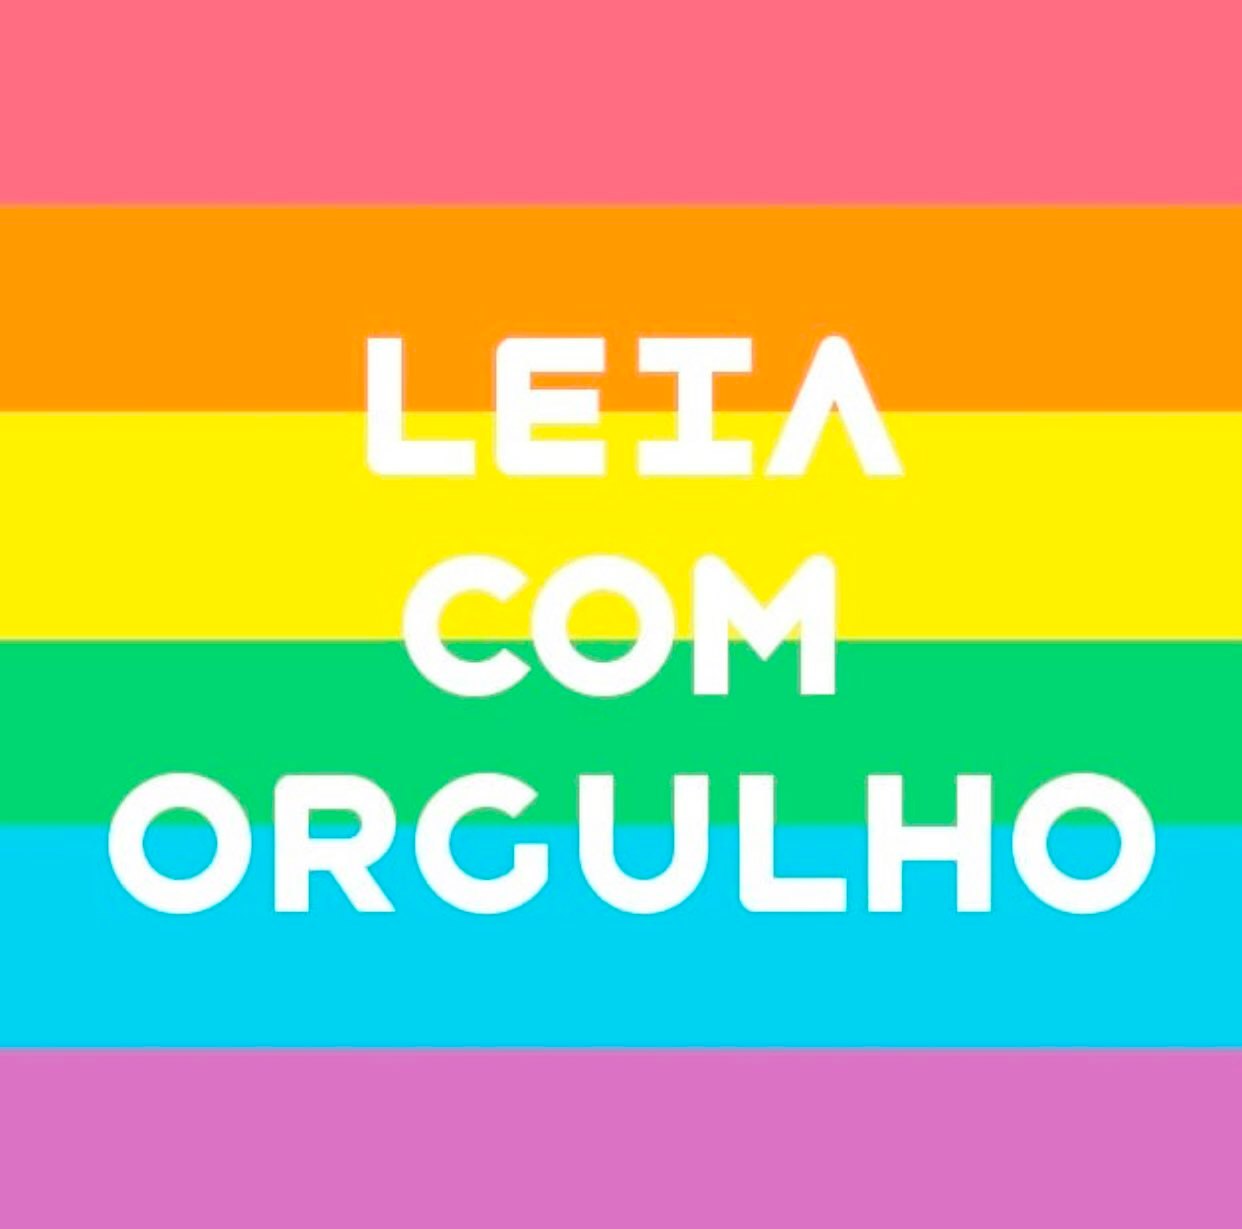 Leia com orgulho: confira as indicações de livros LGBT que se espalharam nas redes após censura no RJ